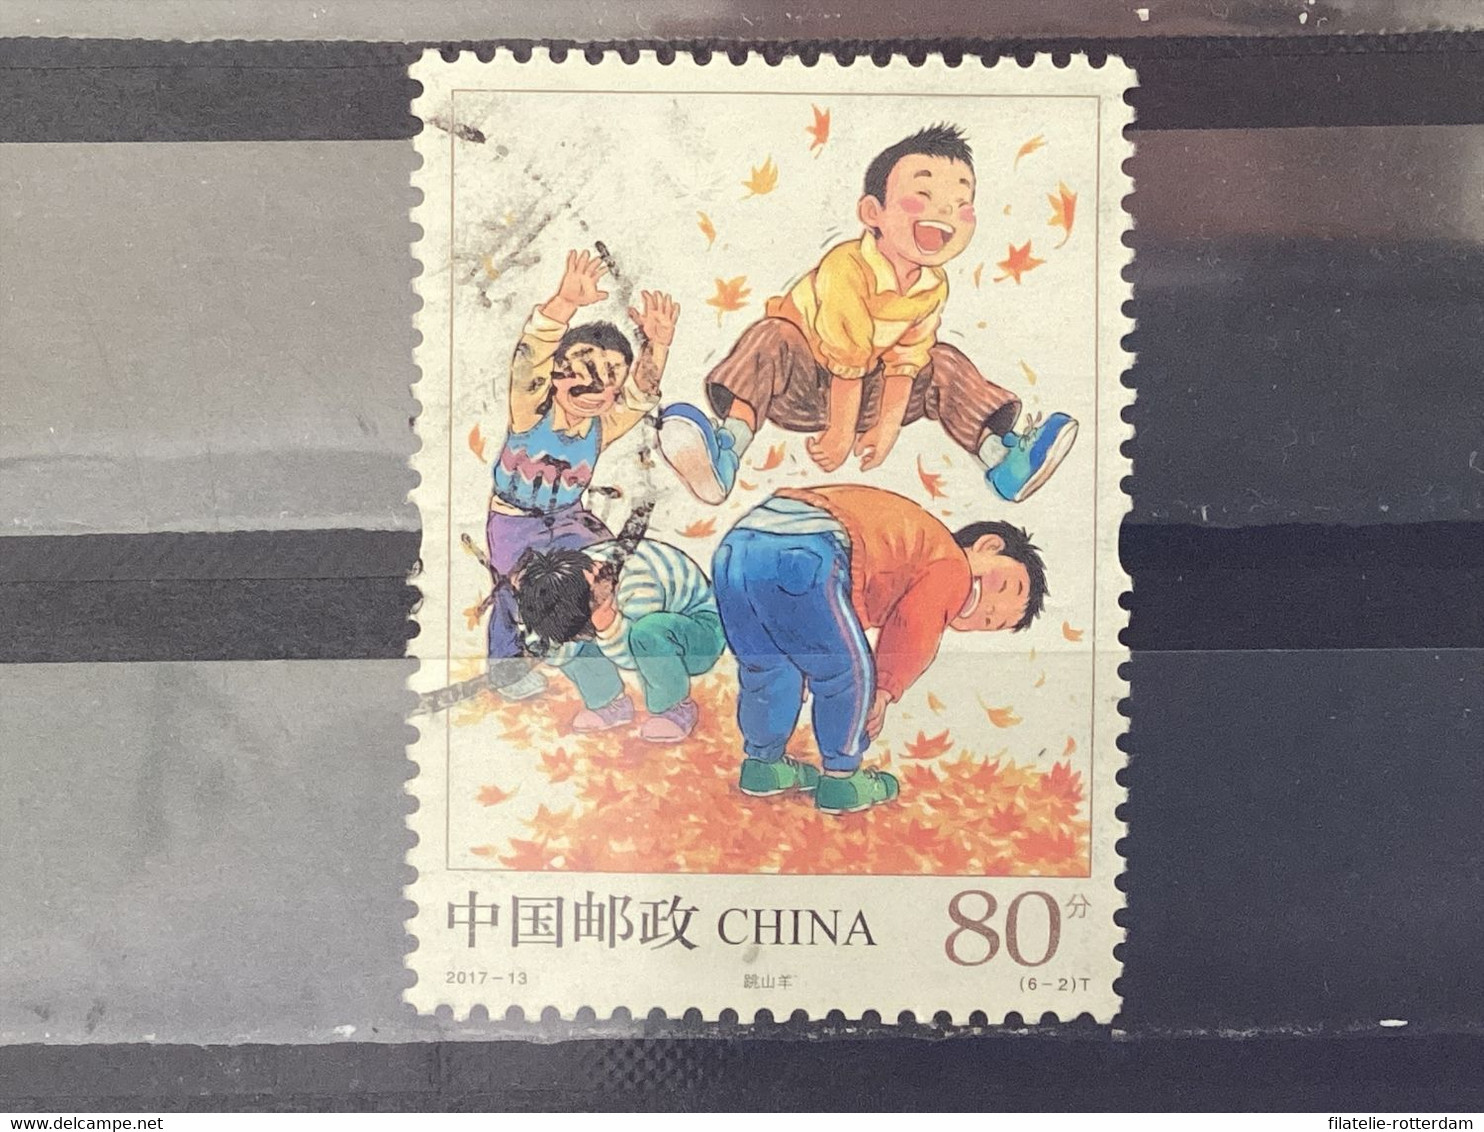 China - Kinderspelen (80) 2017 - Gebraucht